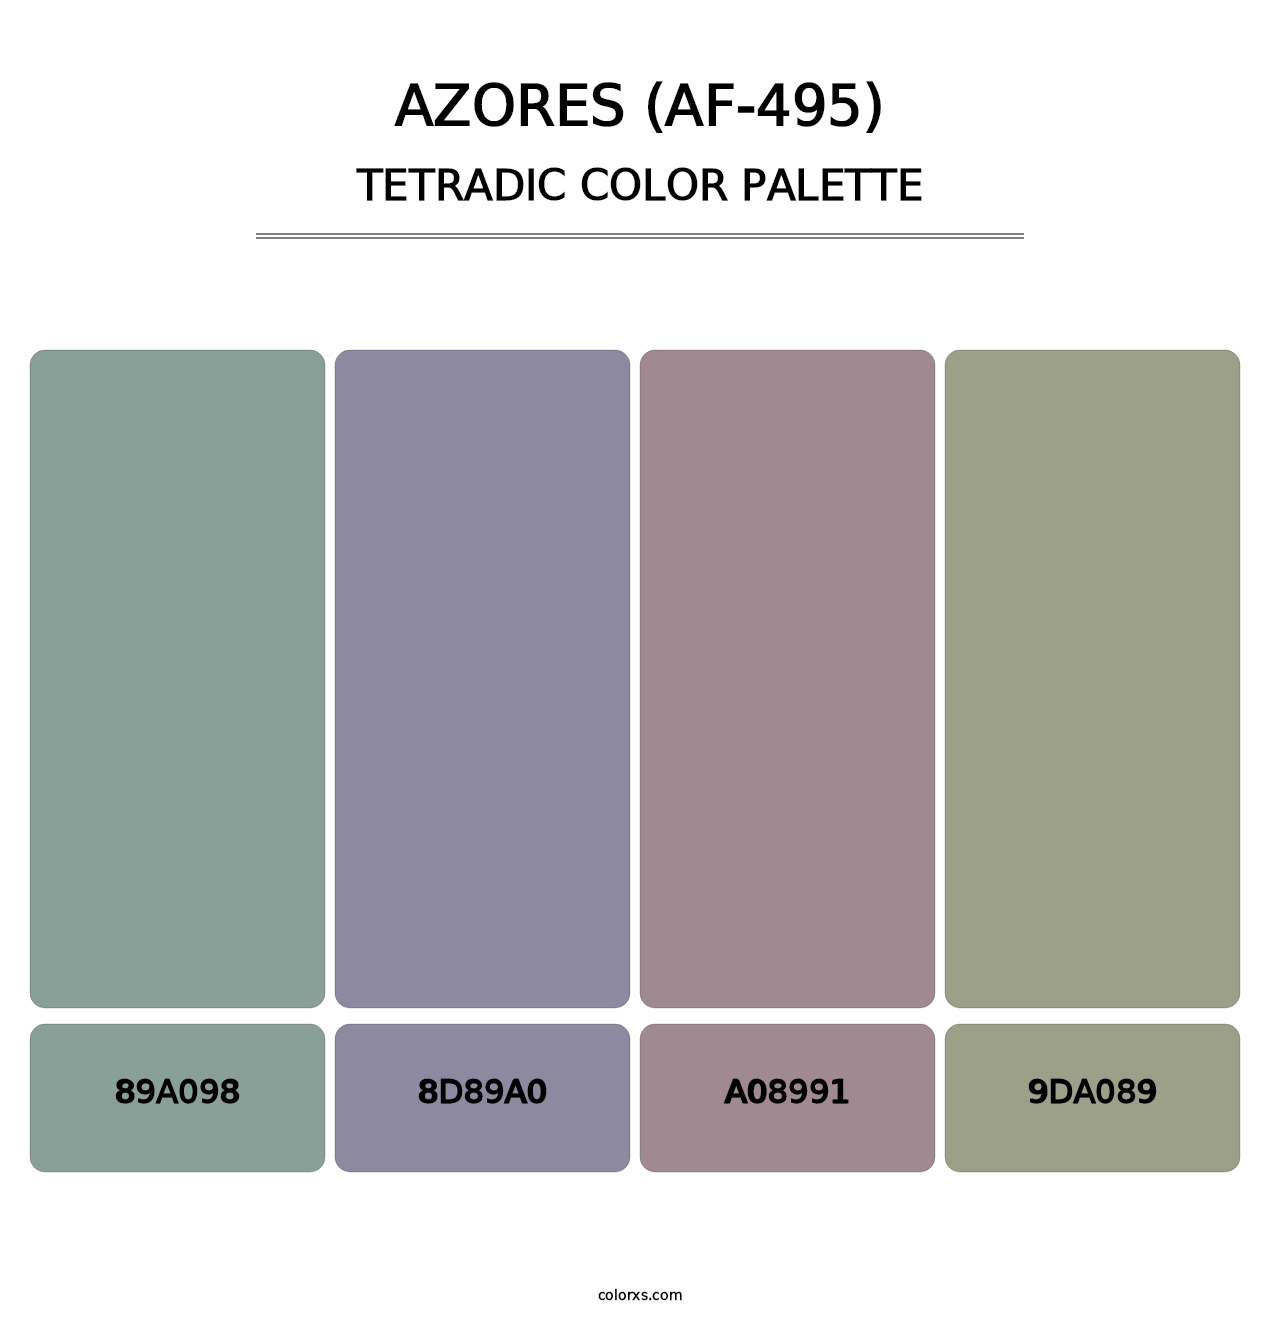 Azores (AF-495) - Tetradic Color Palette